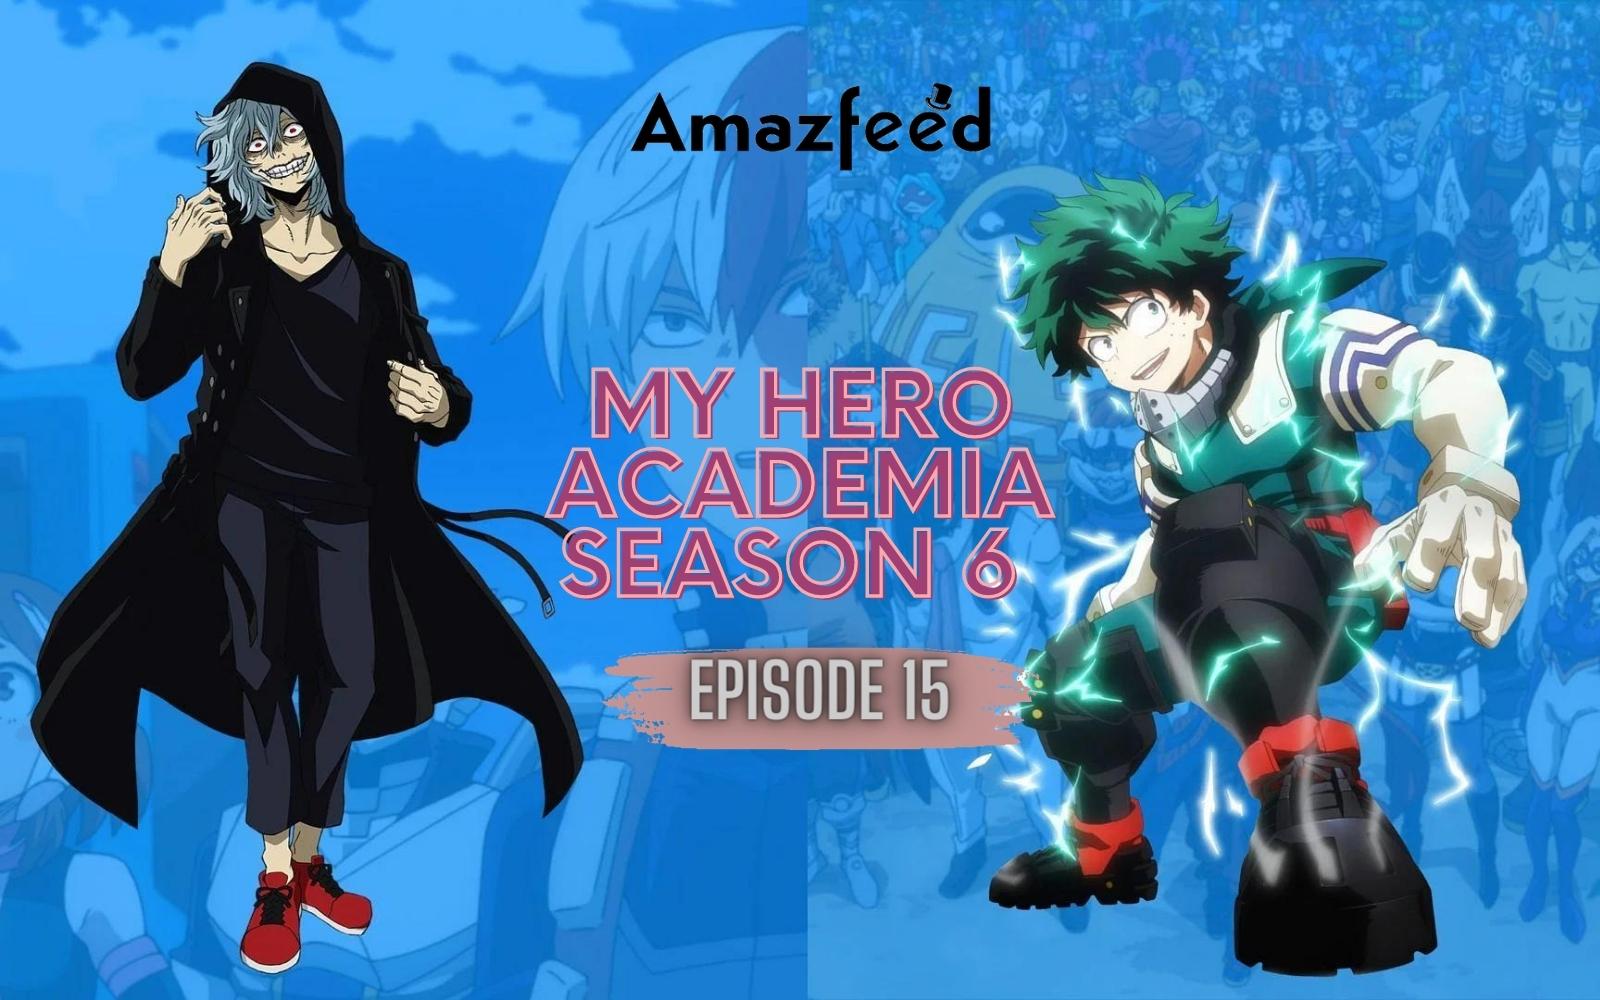 My Hero Academia Season 6 Episode 7 Enlists Deku and Bakugo